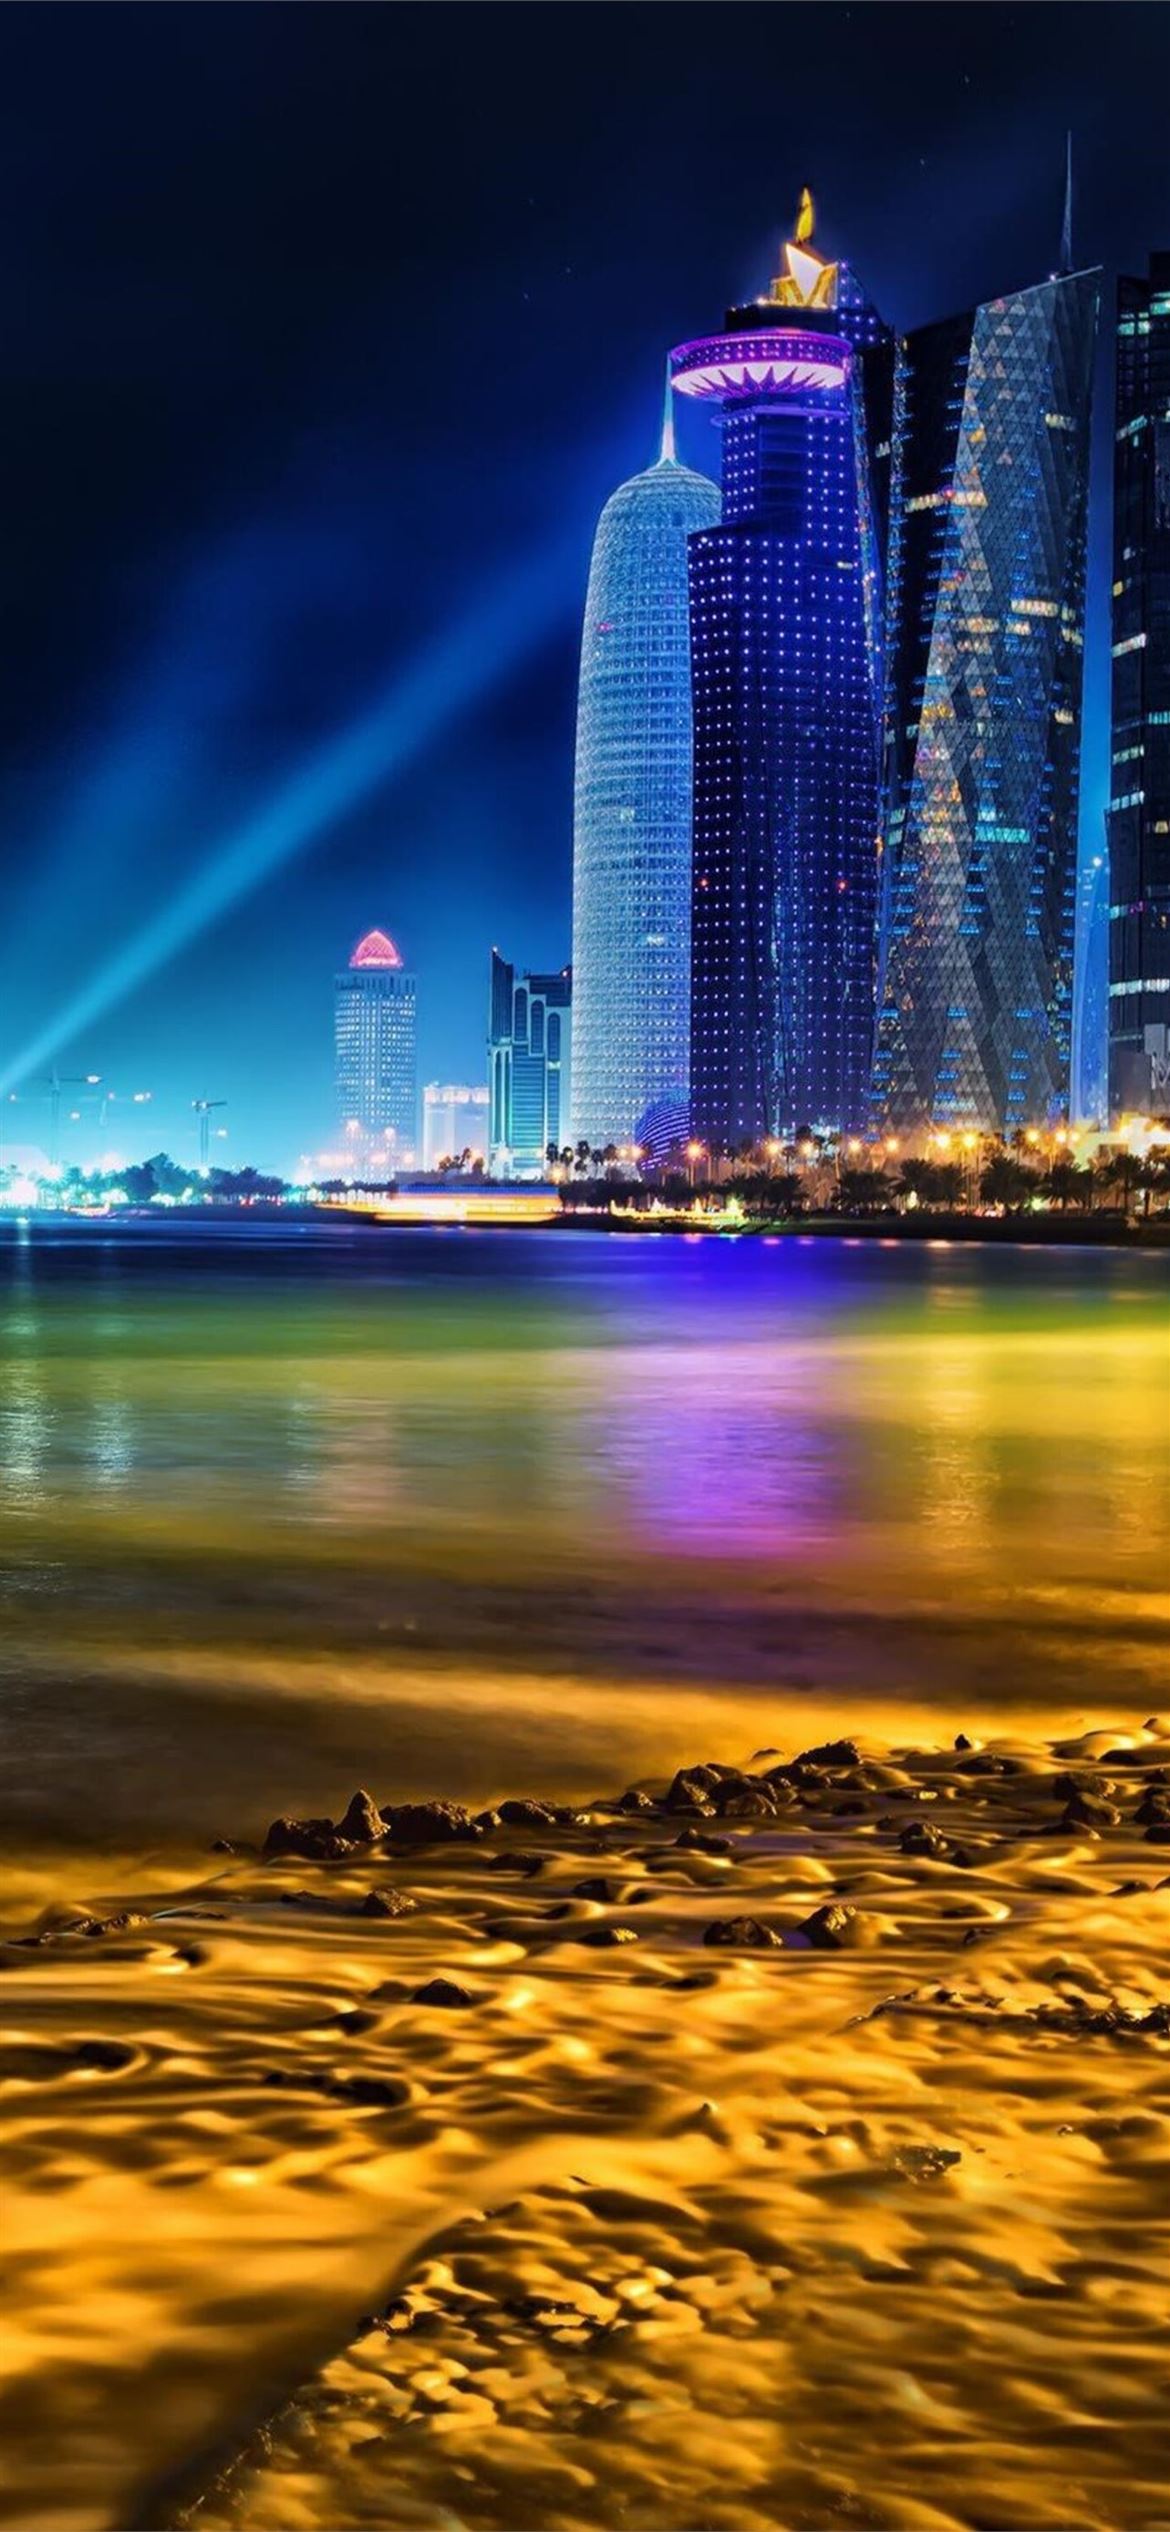 Qatar in 4K at Night  Doha Qatar in 4K UHD Film at Night  YouTube